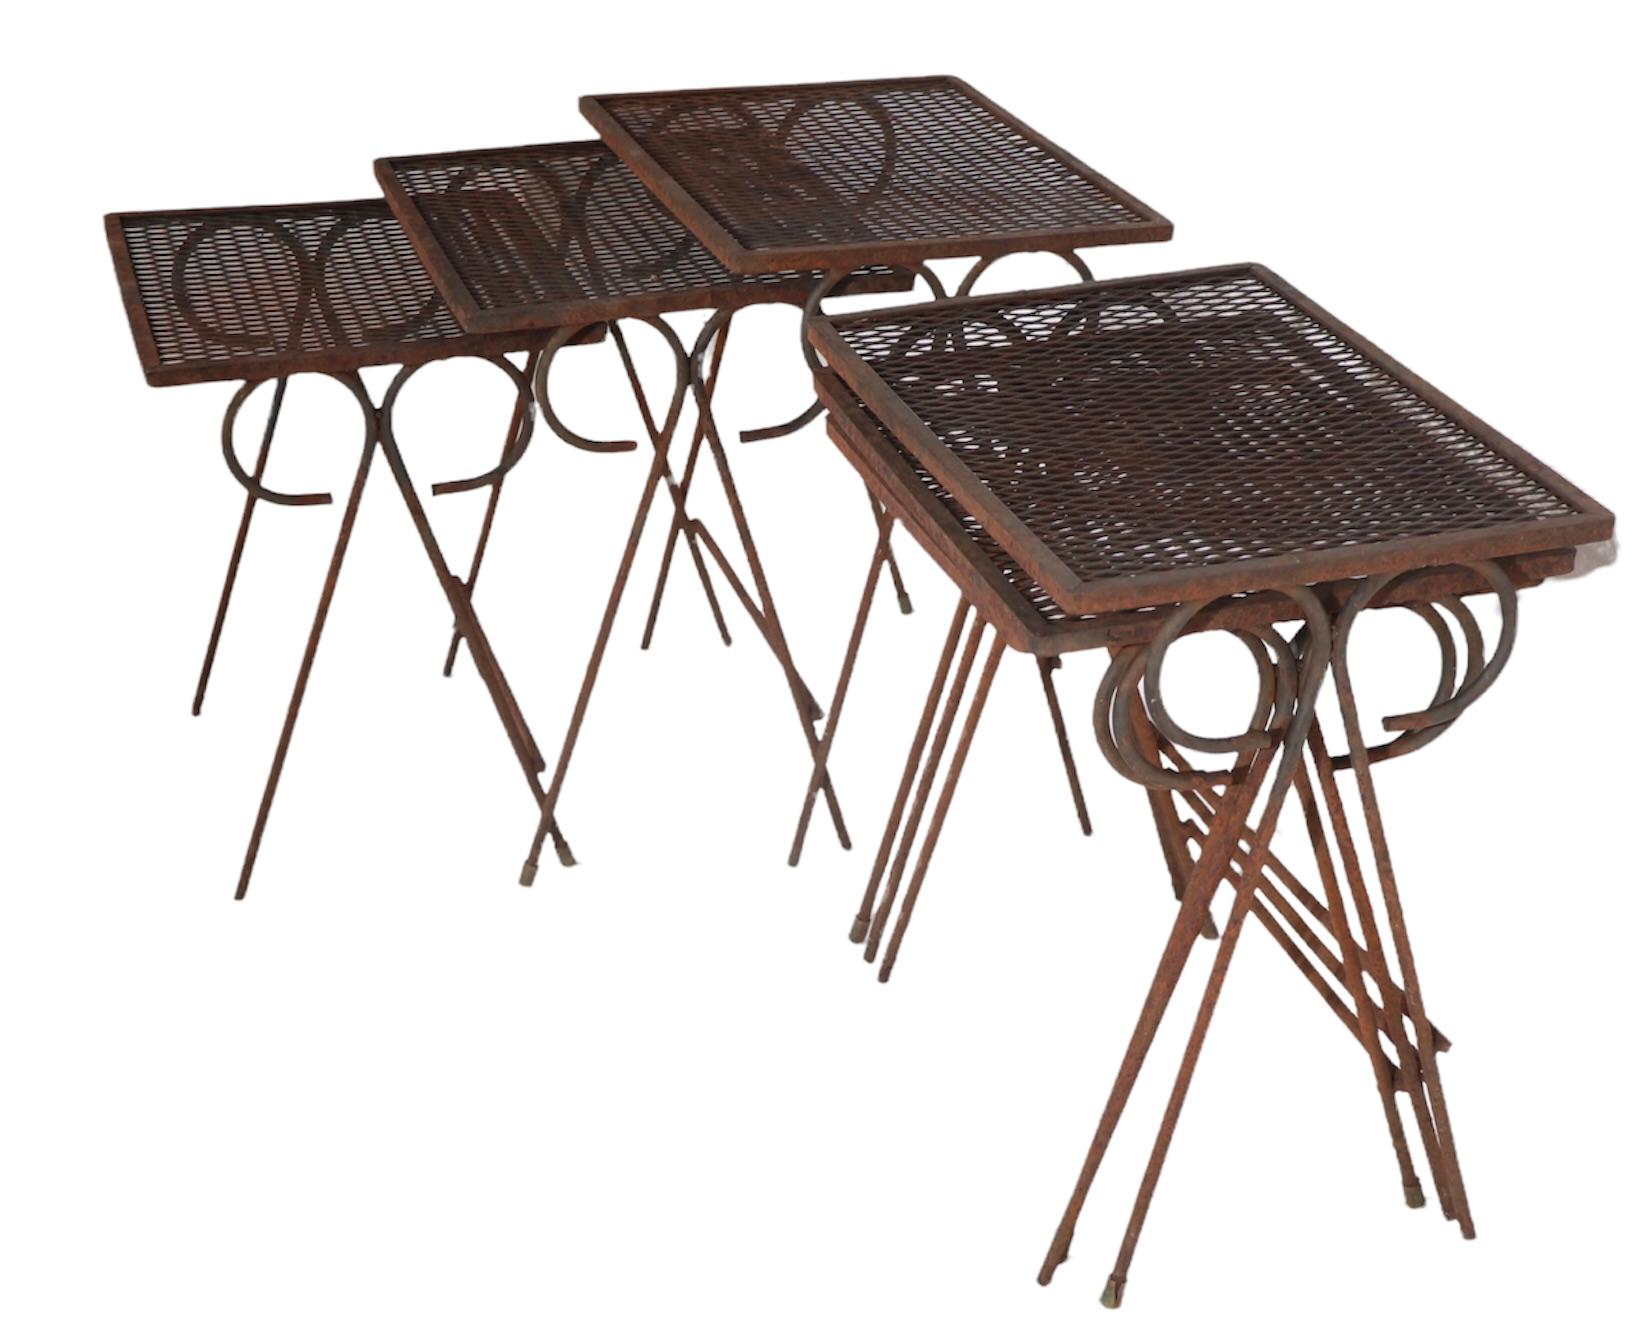 Ensemble assorti de trois tables gigognes graduées en fer forgé et en maille métallique, conçu par Maurizio Tempestini, pour Salterini. Les tables ont toutes une structure saine et robuste, certaines n'ont pas de pieds en pad en caoutchouc et toutes